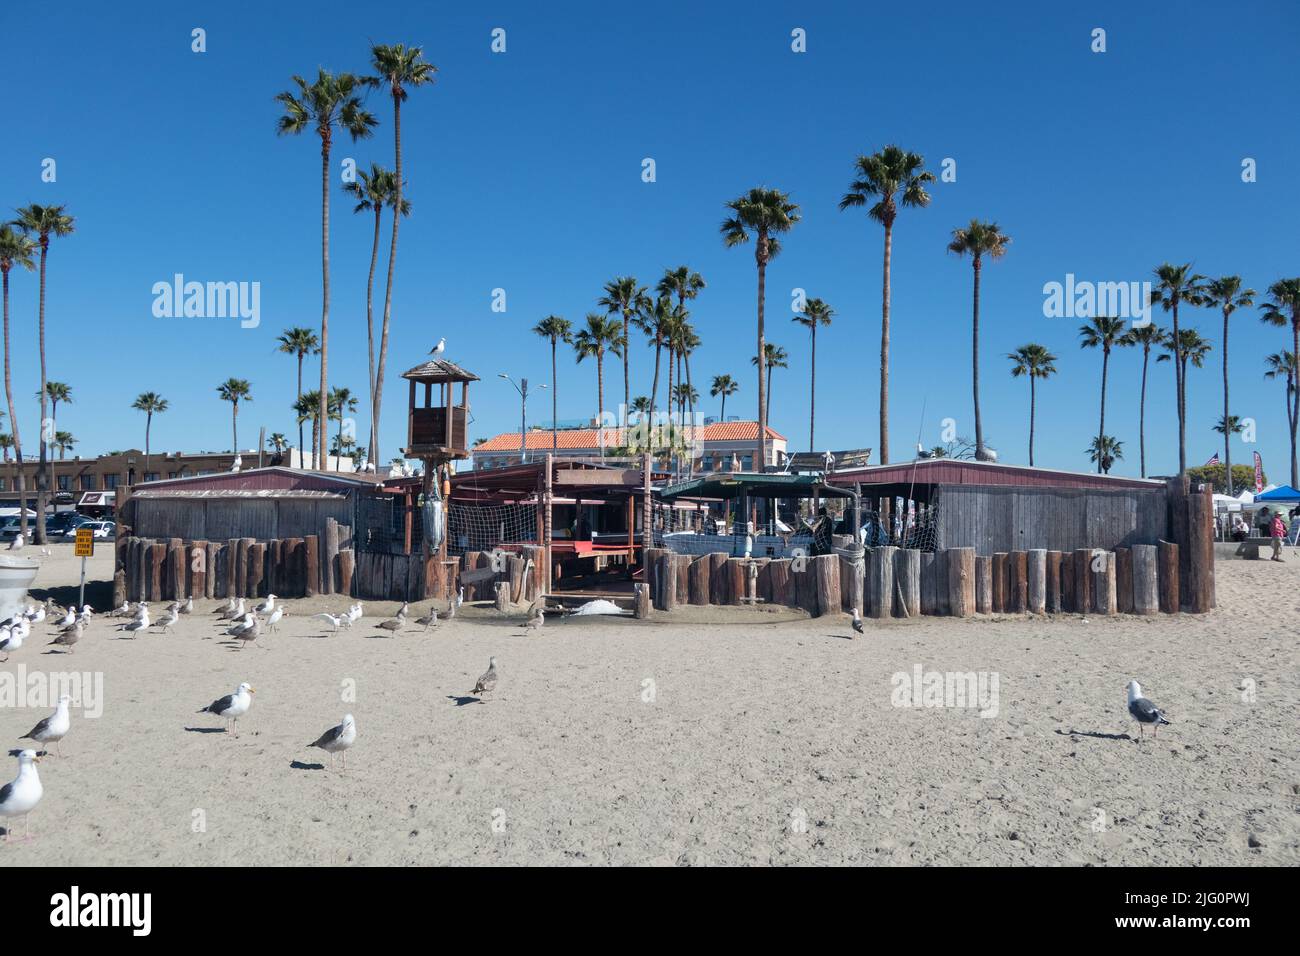 Die Strandseite des historischen Dory-Fischmarkts auf der Balboa Peninsula Newport Beach, CA USA Stockfoto